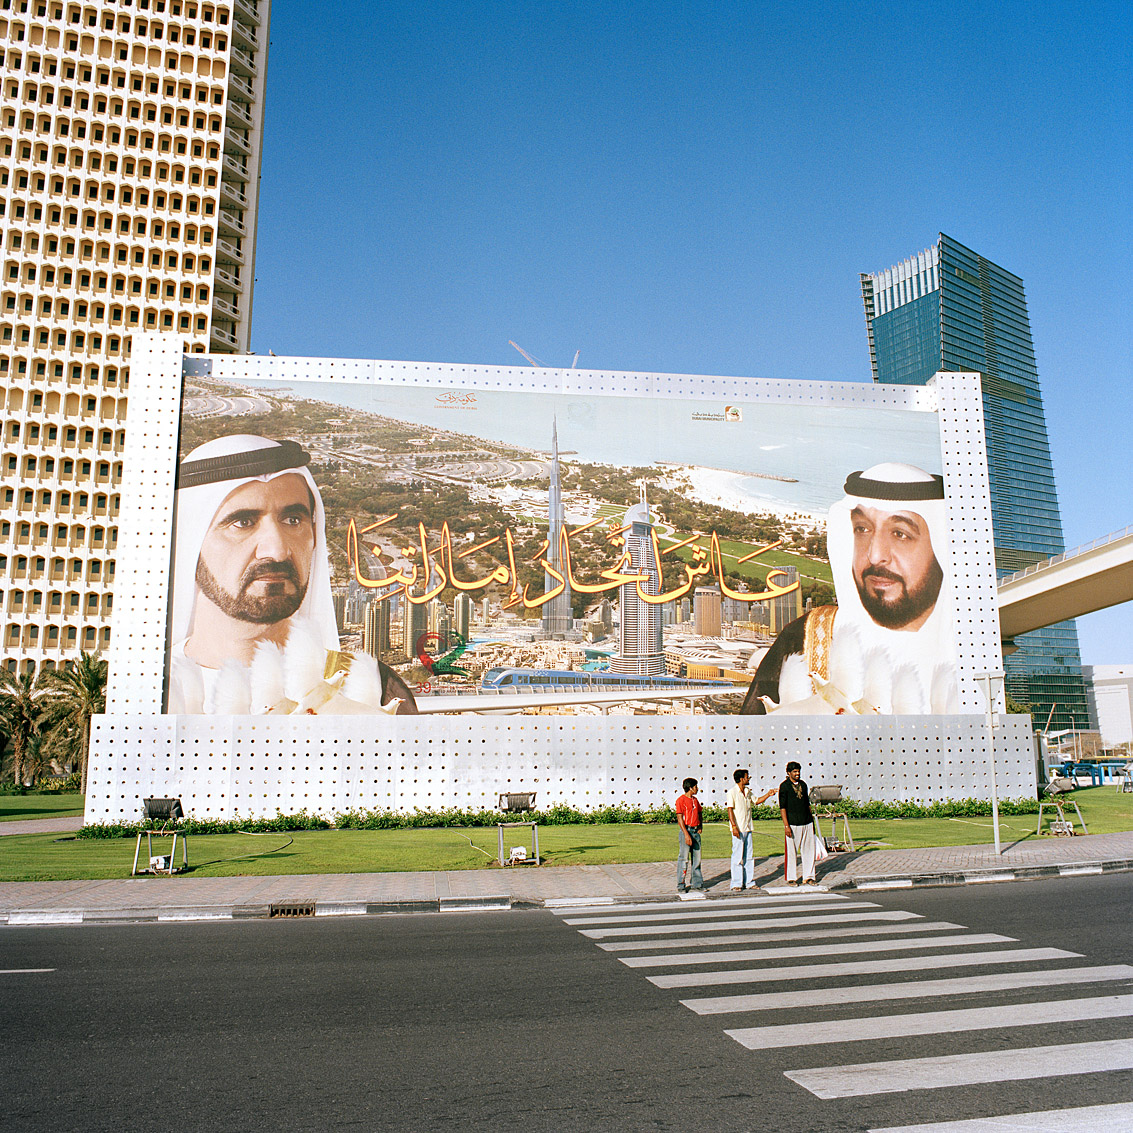 Affichage à la gloire du Cheikh Mohammed et du Cheikh Khalifa dans le quartier du World Trade Center; Dubaï.